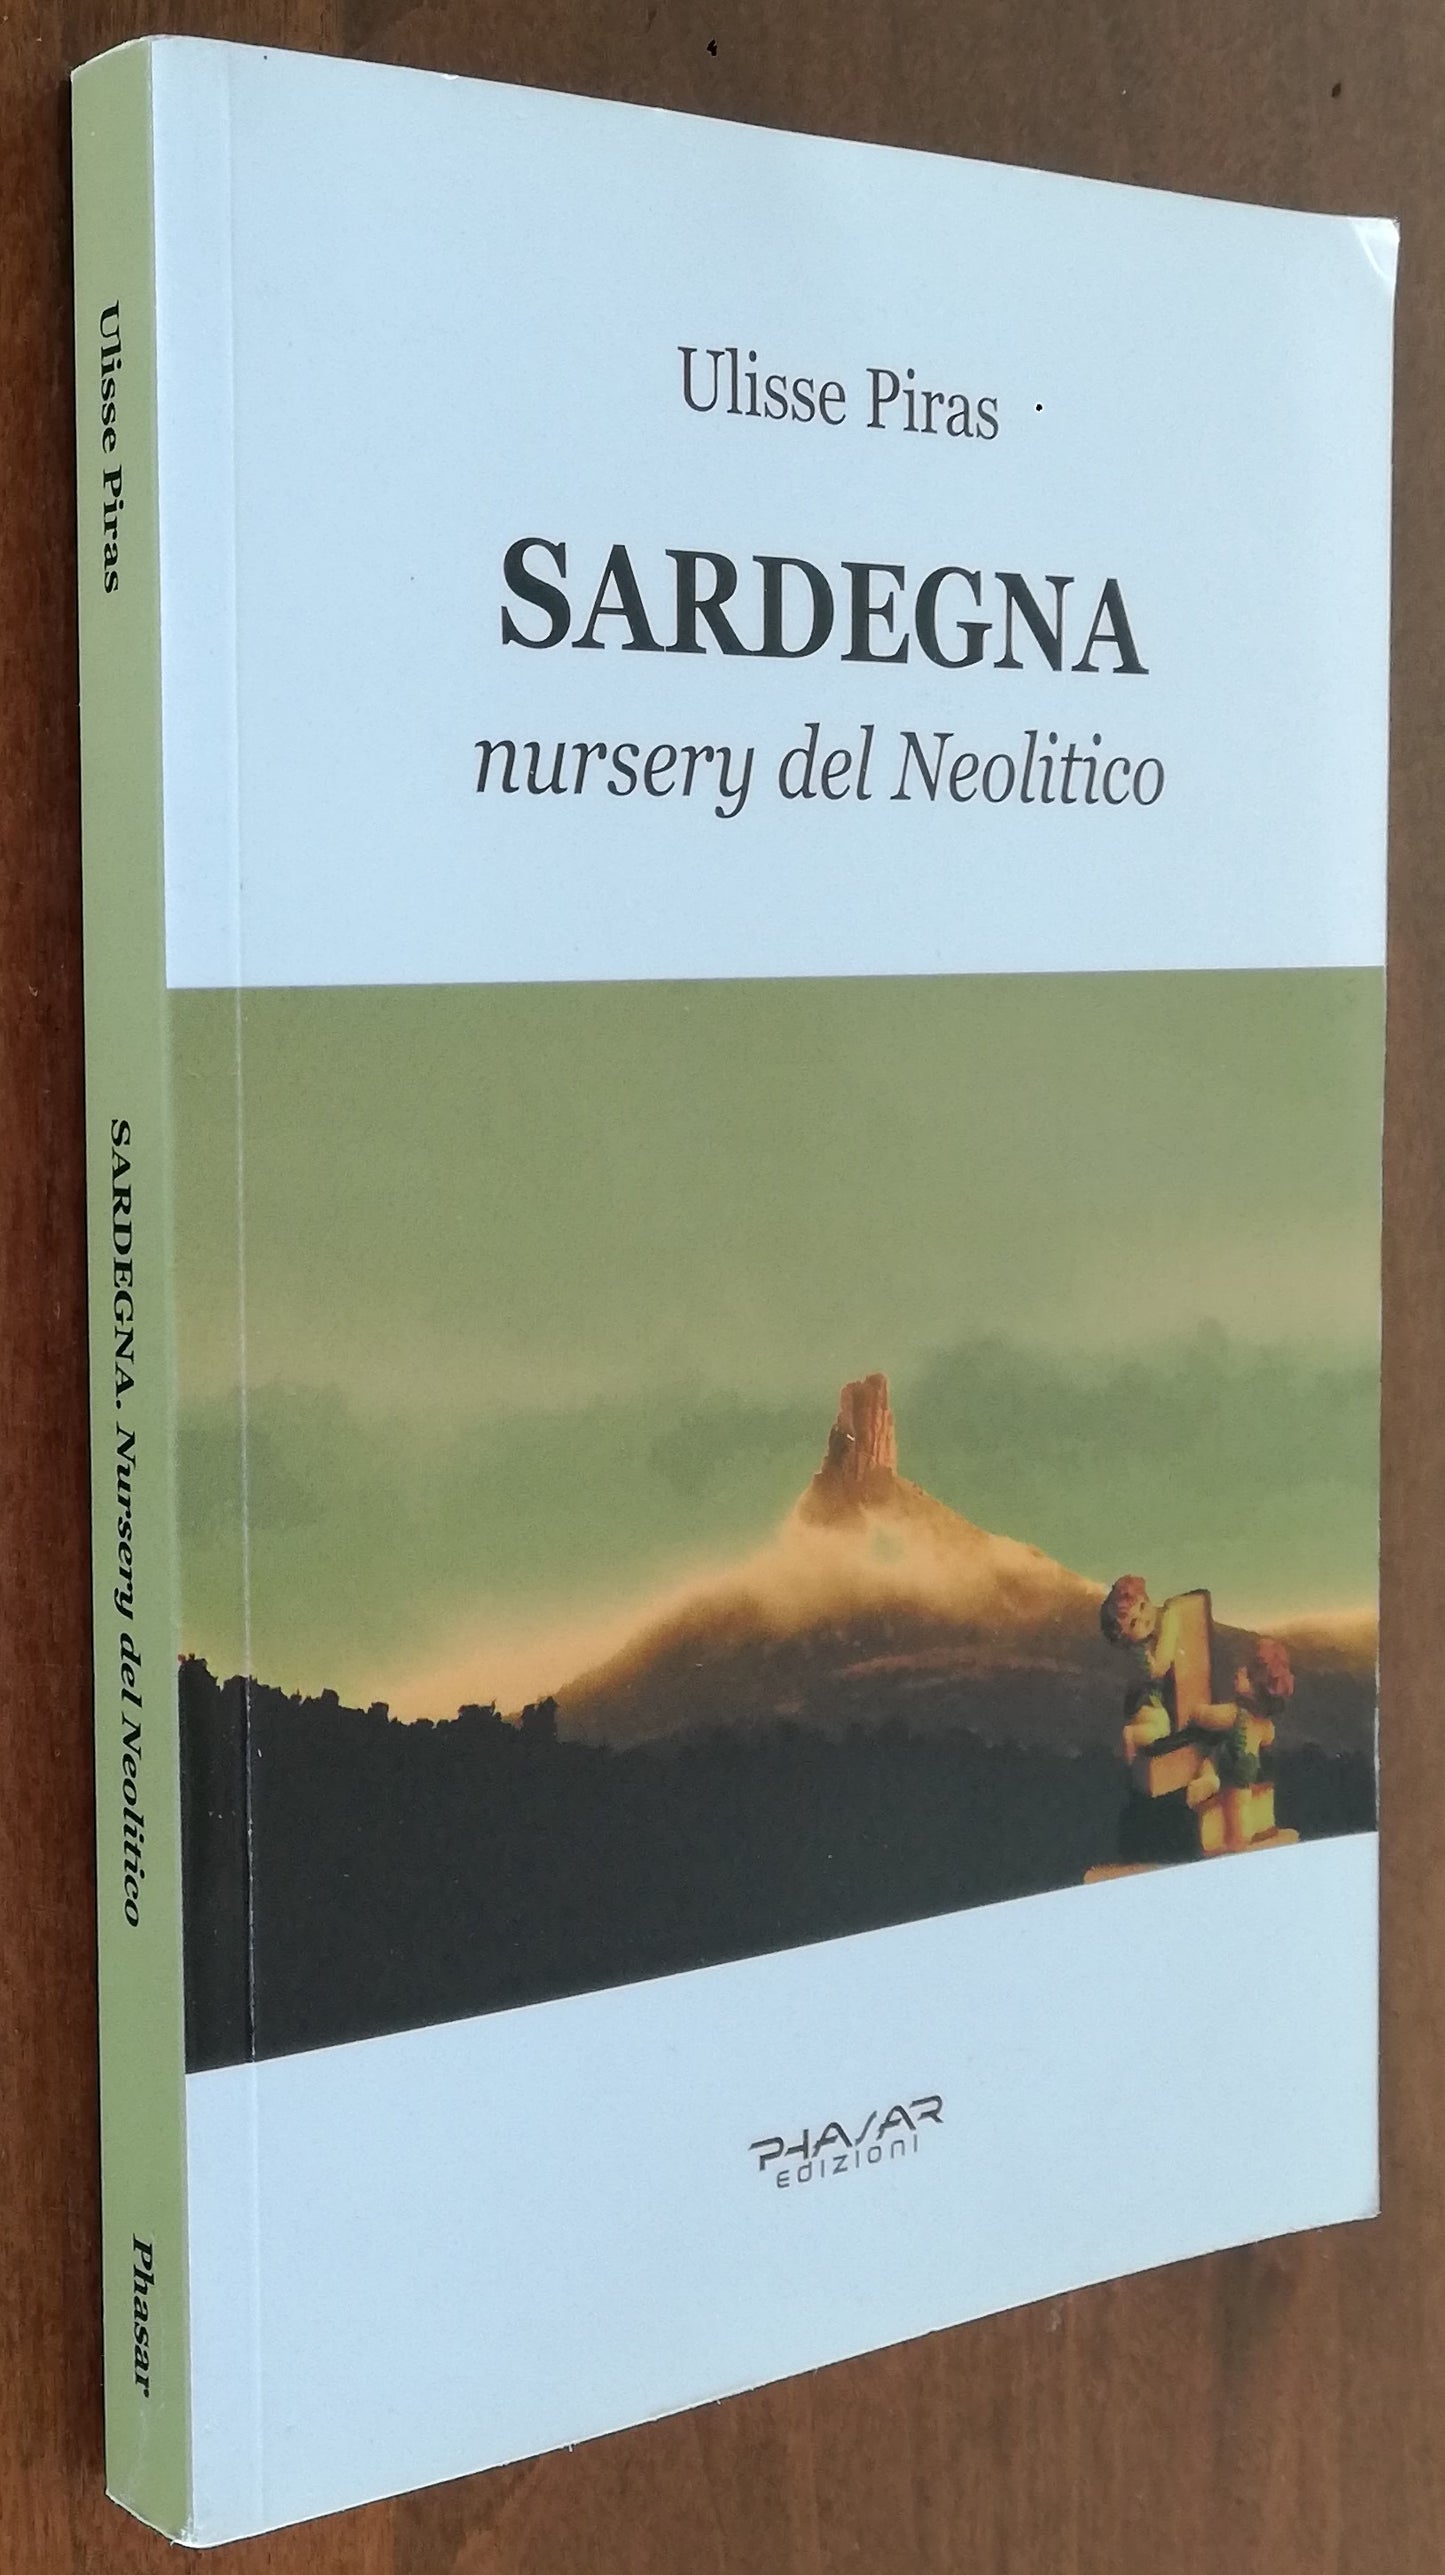 Sardegna nursery del Neolitico